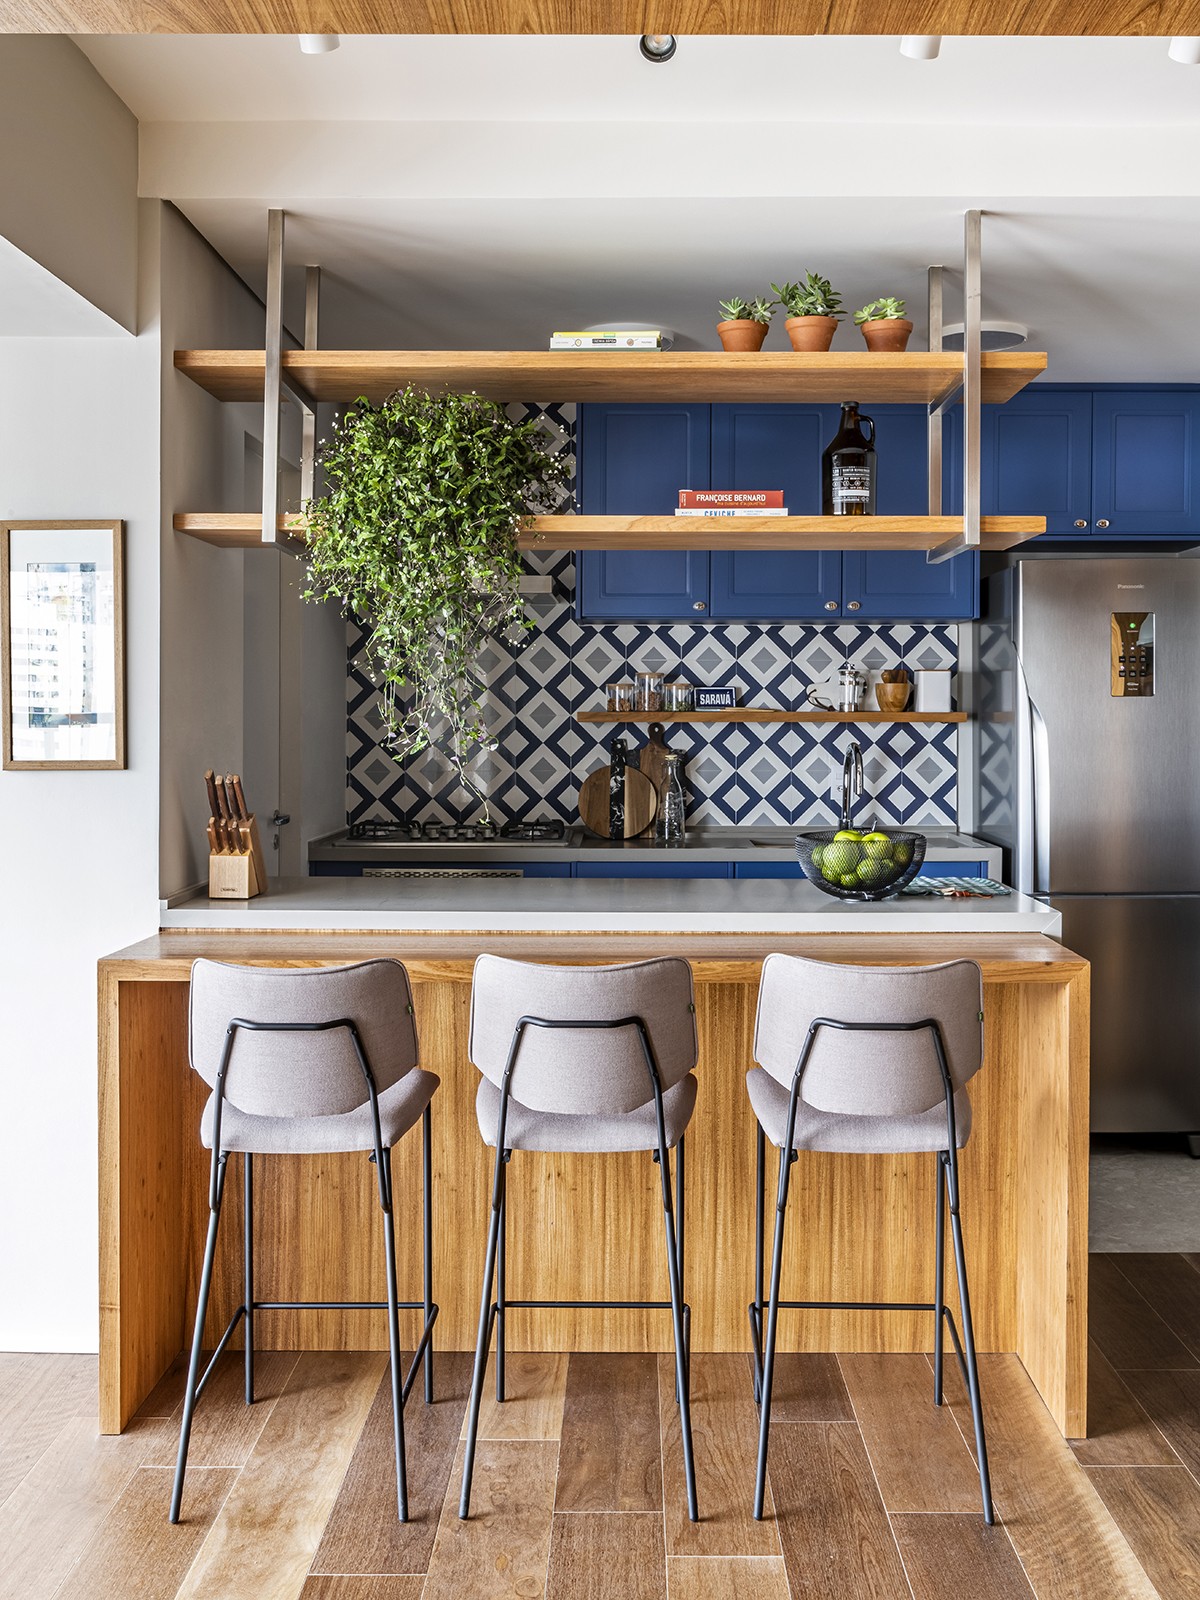 Cozinha | Os móveis em estilo provençal são contornados pelas cerâmicas geométricas em tons de azul, da PortobelloShop, criando um ambiente lúdico que traz memórias afetivas ao morador (Foto: Renato Navarro/Divulgação)